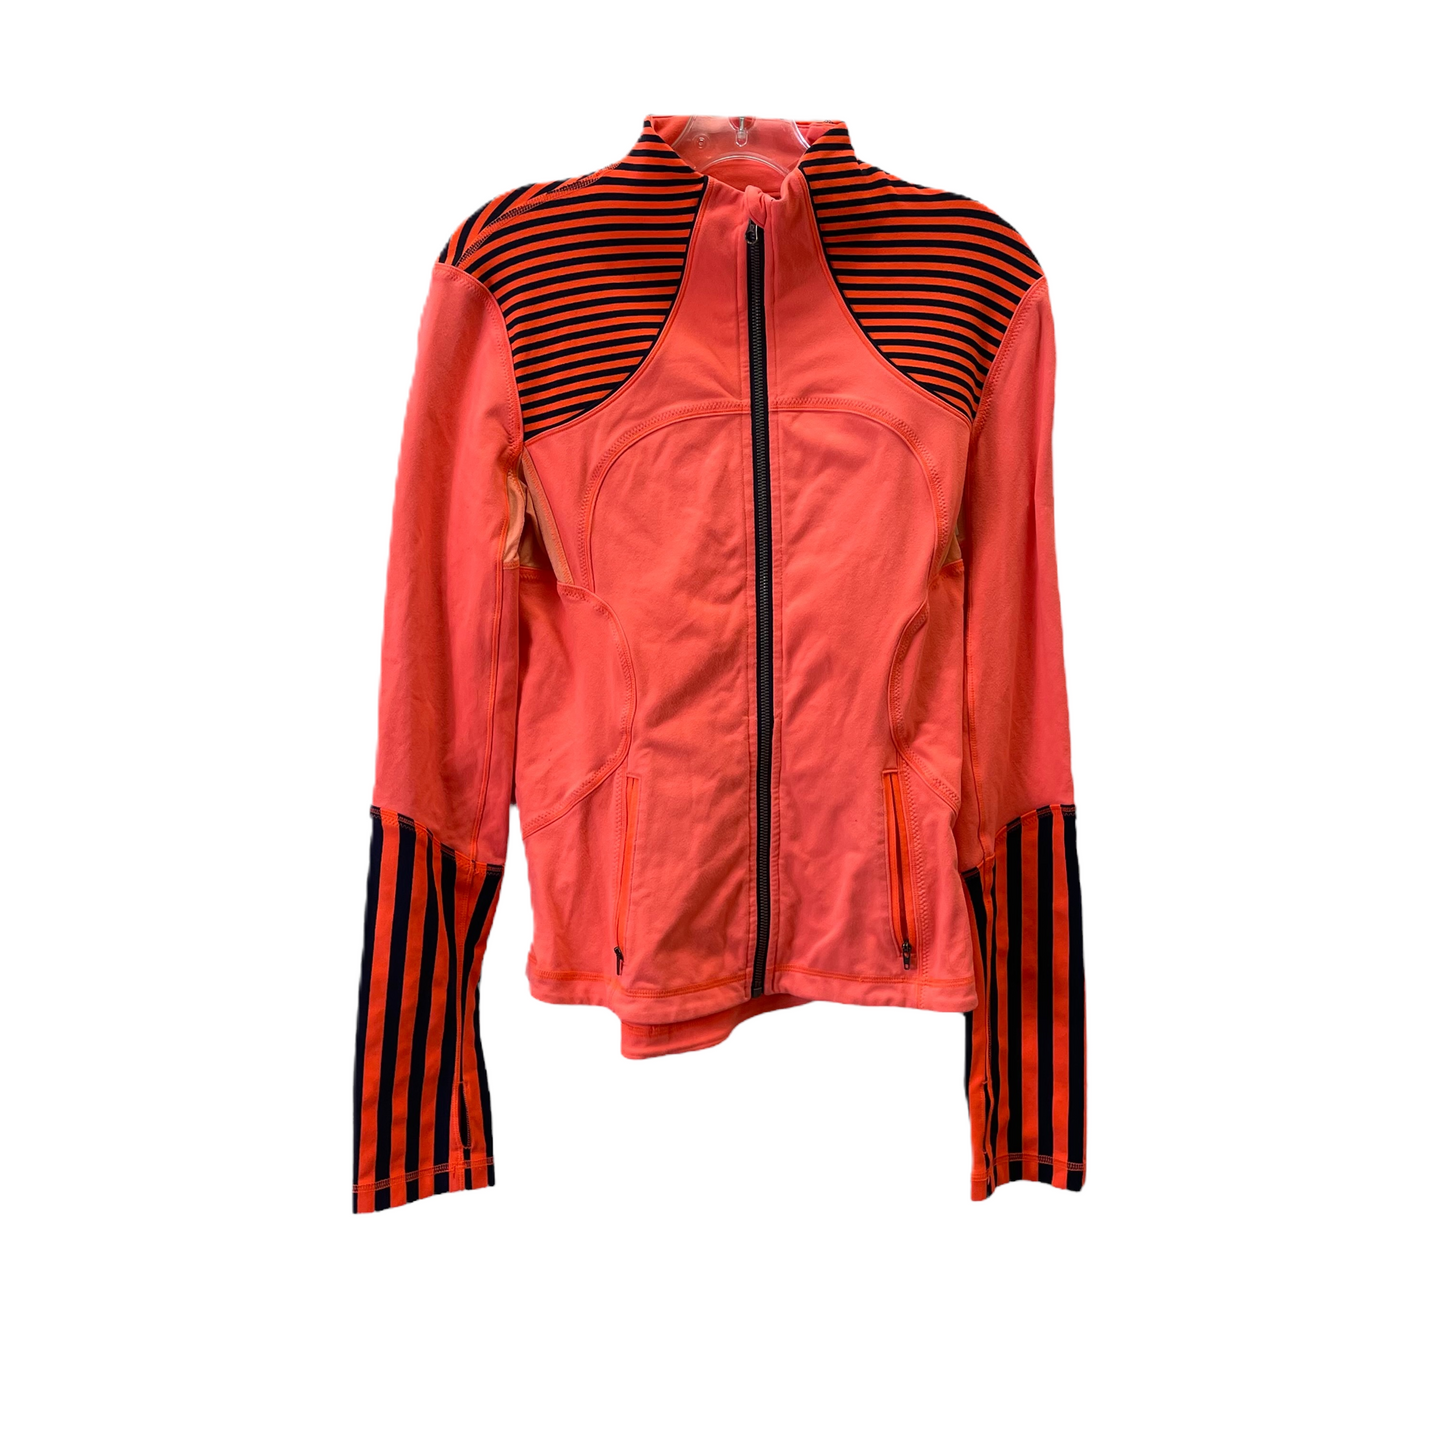 Pink Athletic Jacket By Lululemon, Size: M